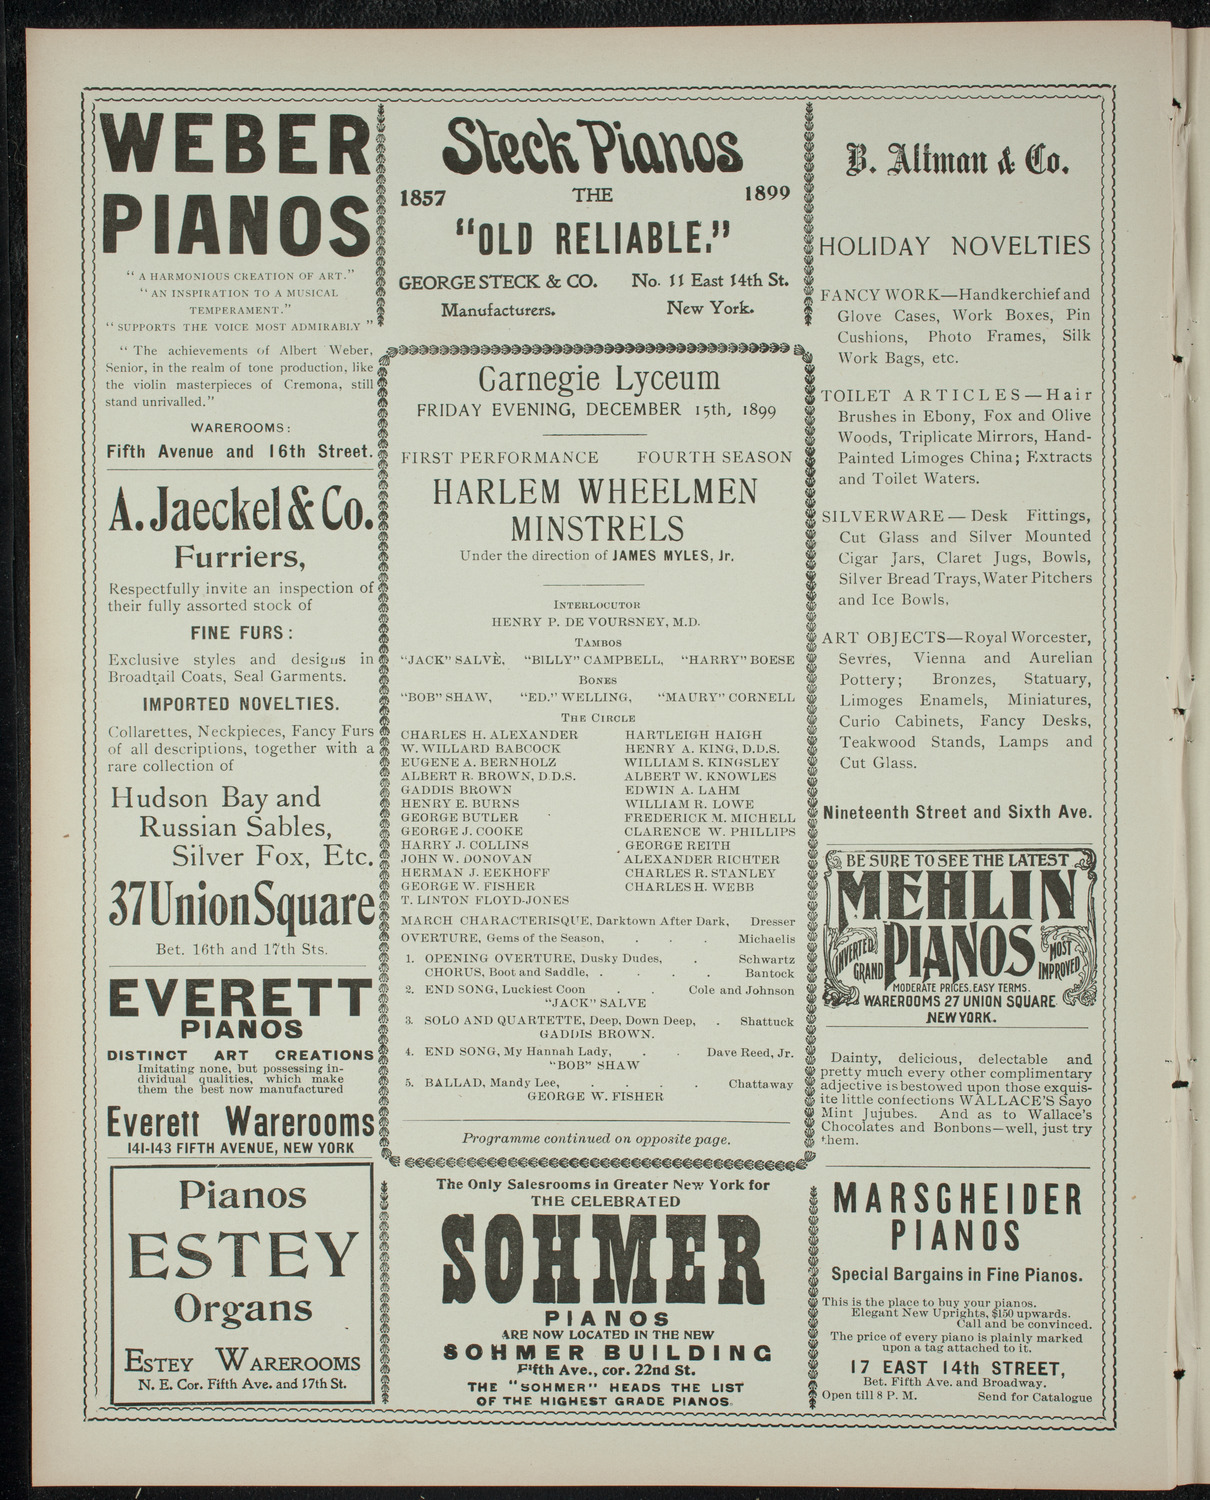 Harlem Wheelmen Minstrels, December 15, 1899, program page 2